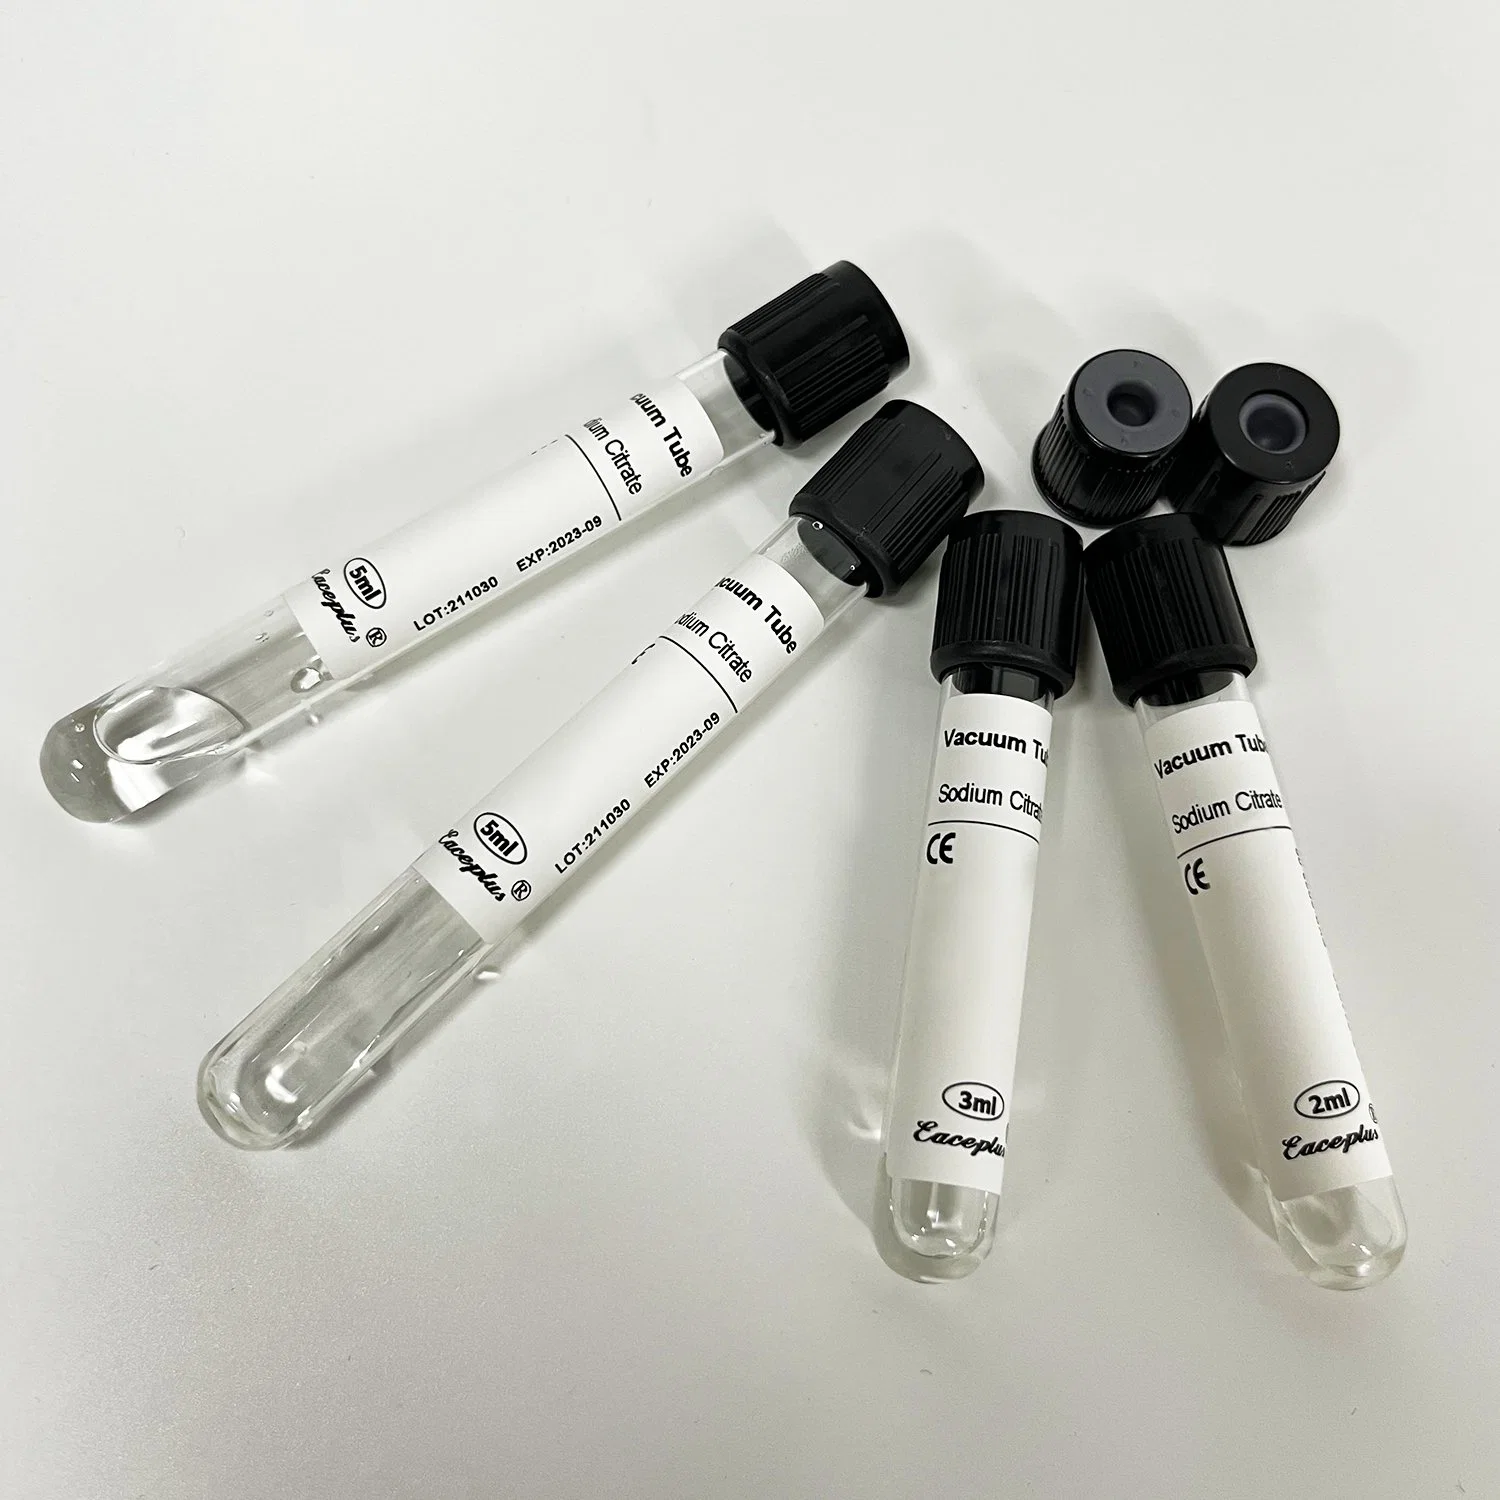 Siny Manufacture Heparin Lithium Natrium Keine Additive Tube Medizinische Einweg Vakuumschlauch Für Blutproben